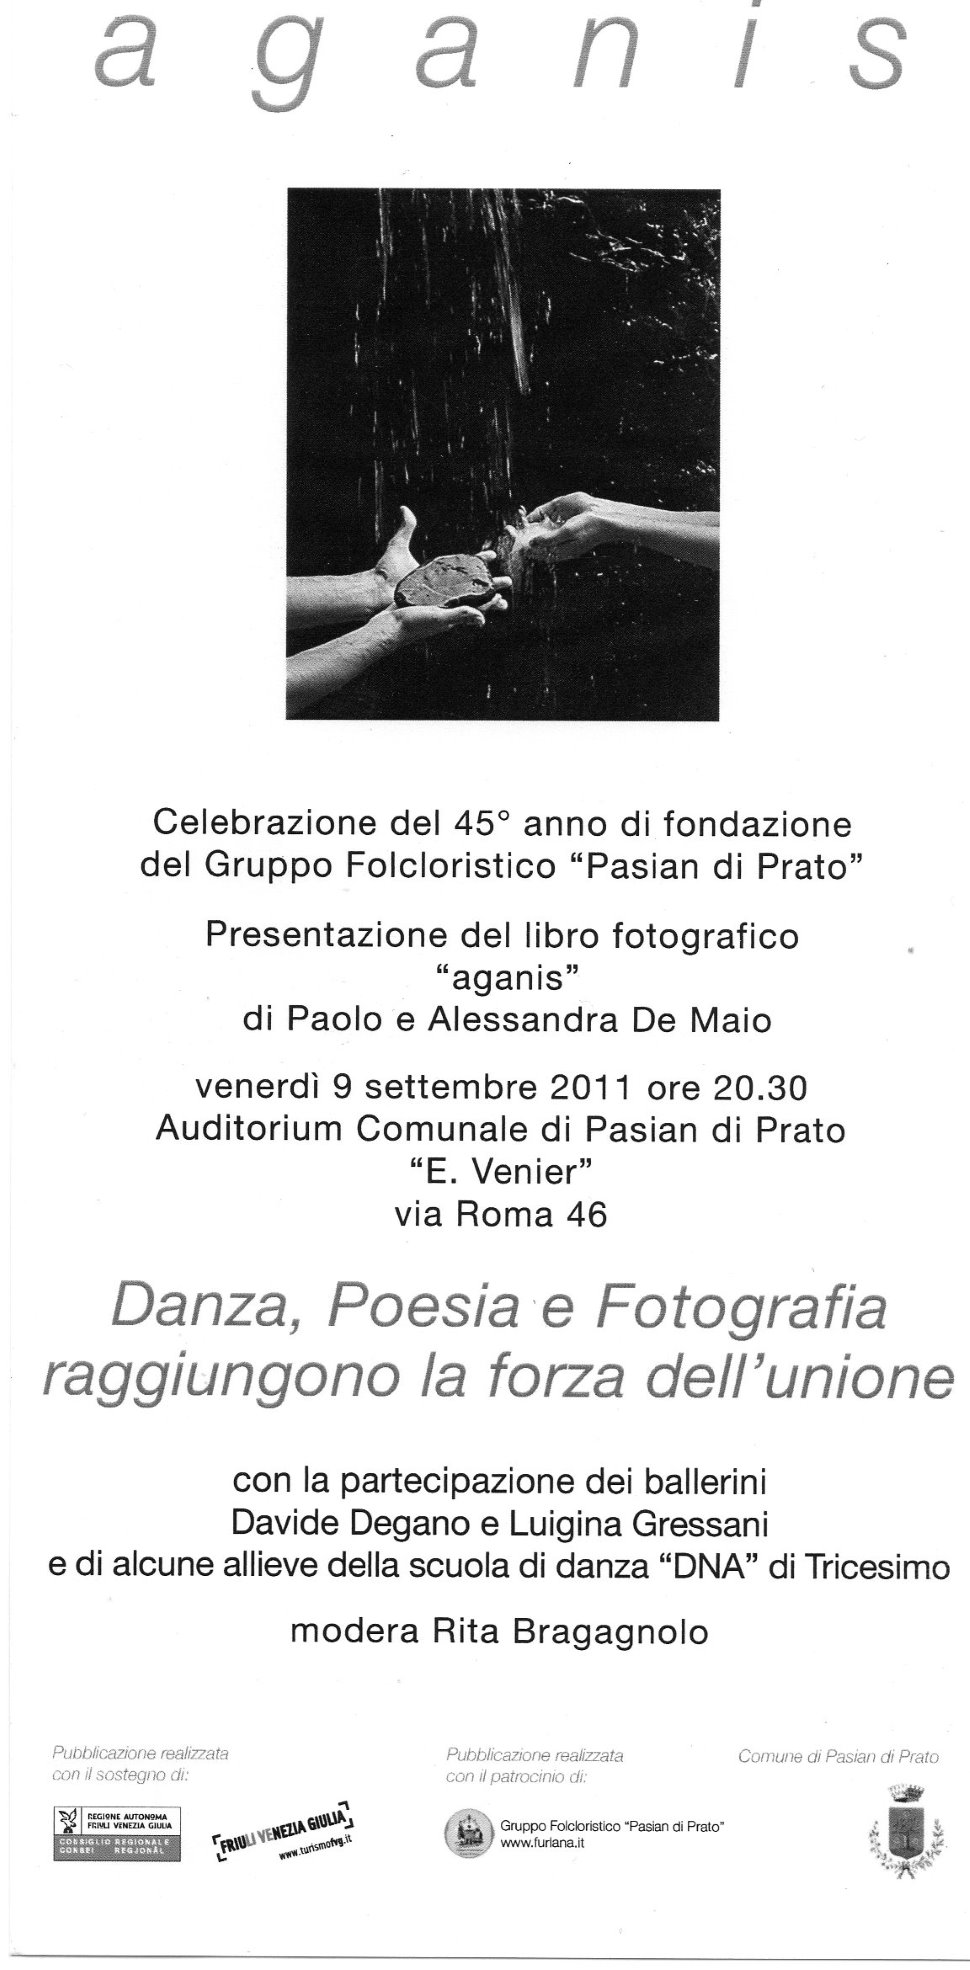 Presentazione del libro fotografico "AGANIS" di Paolo e Alessandra De Maio